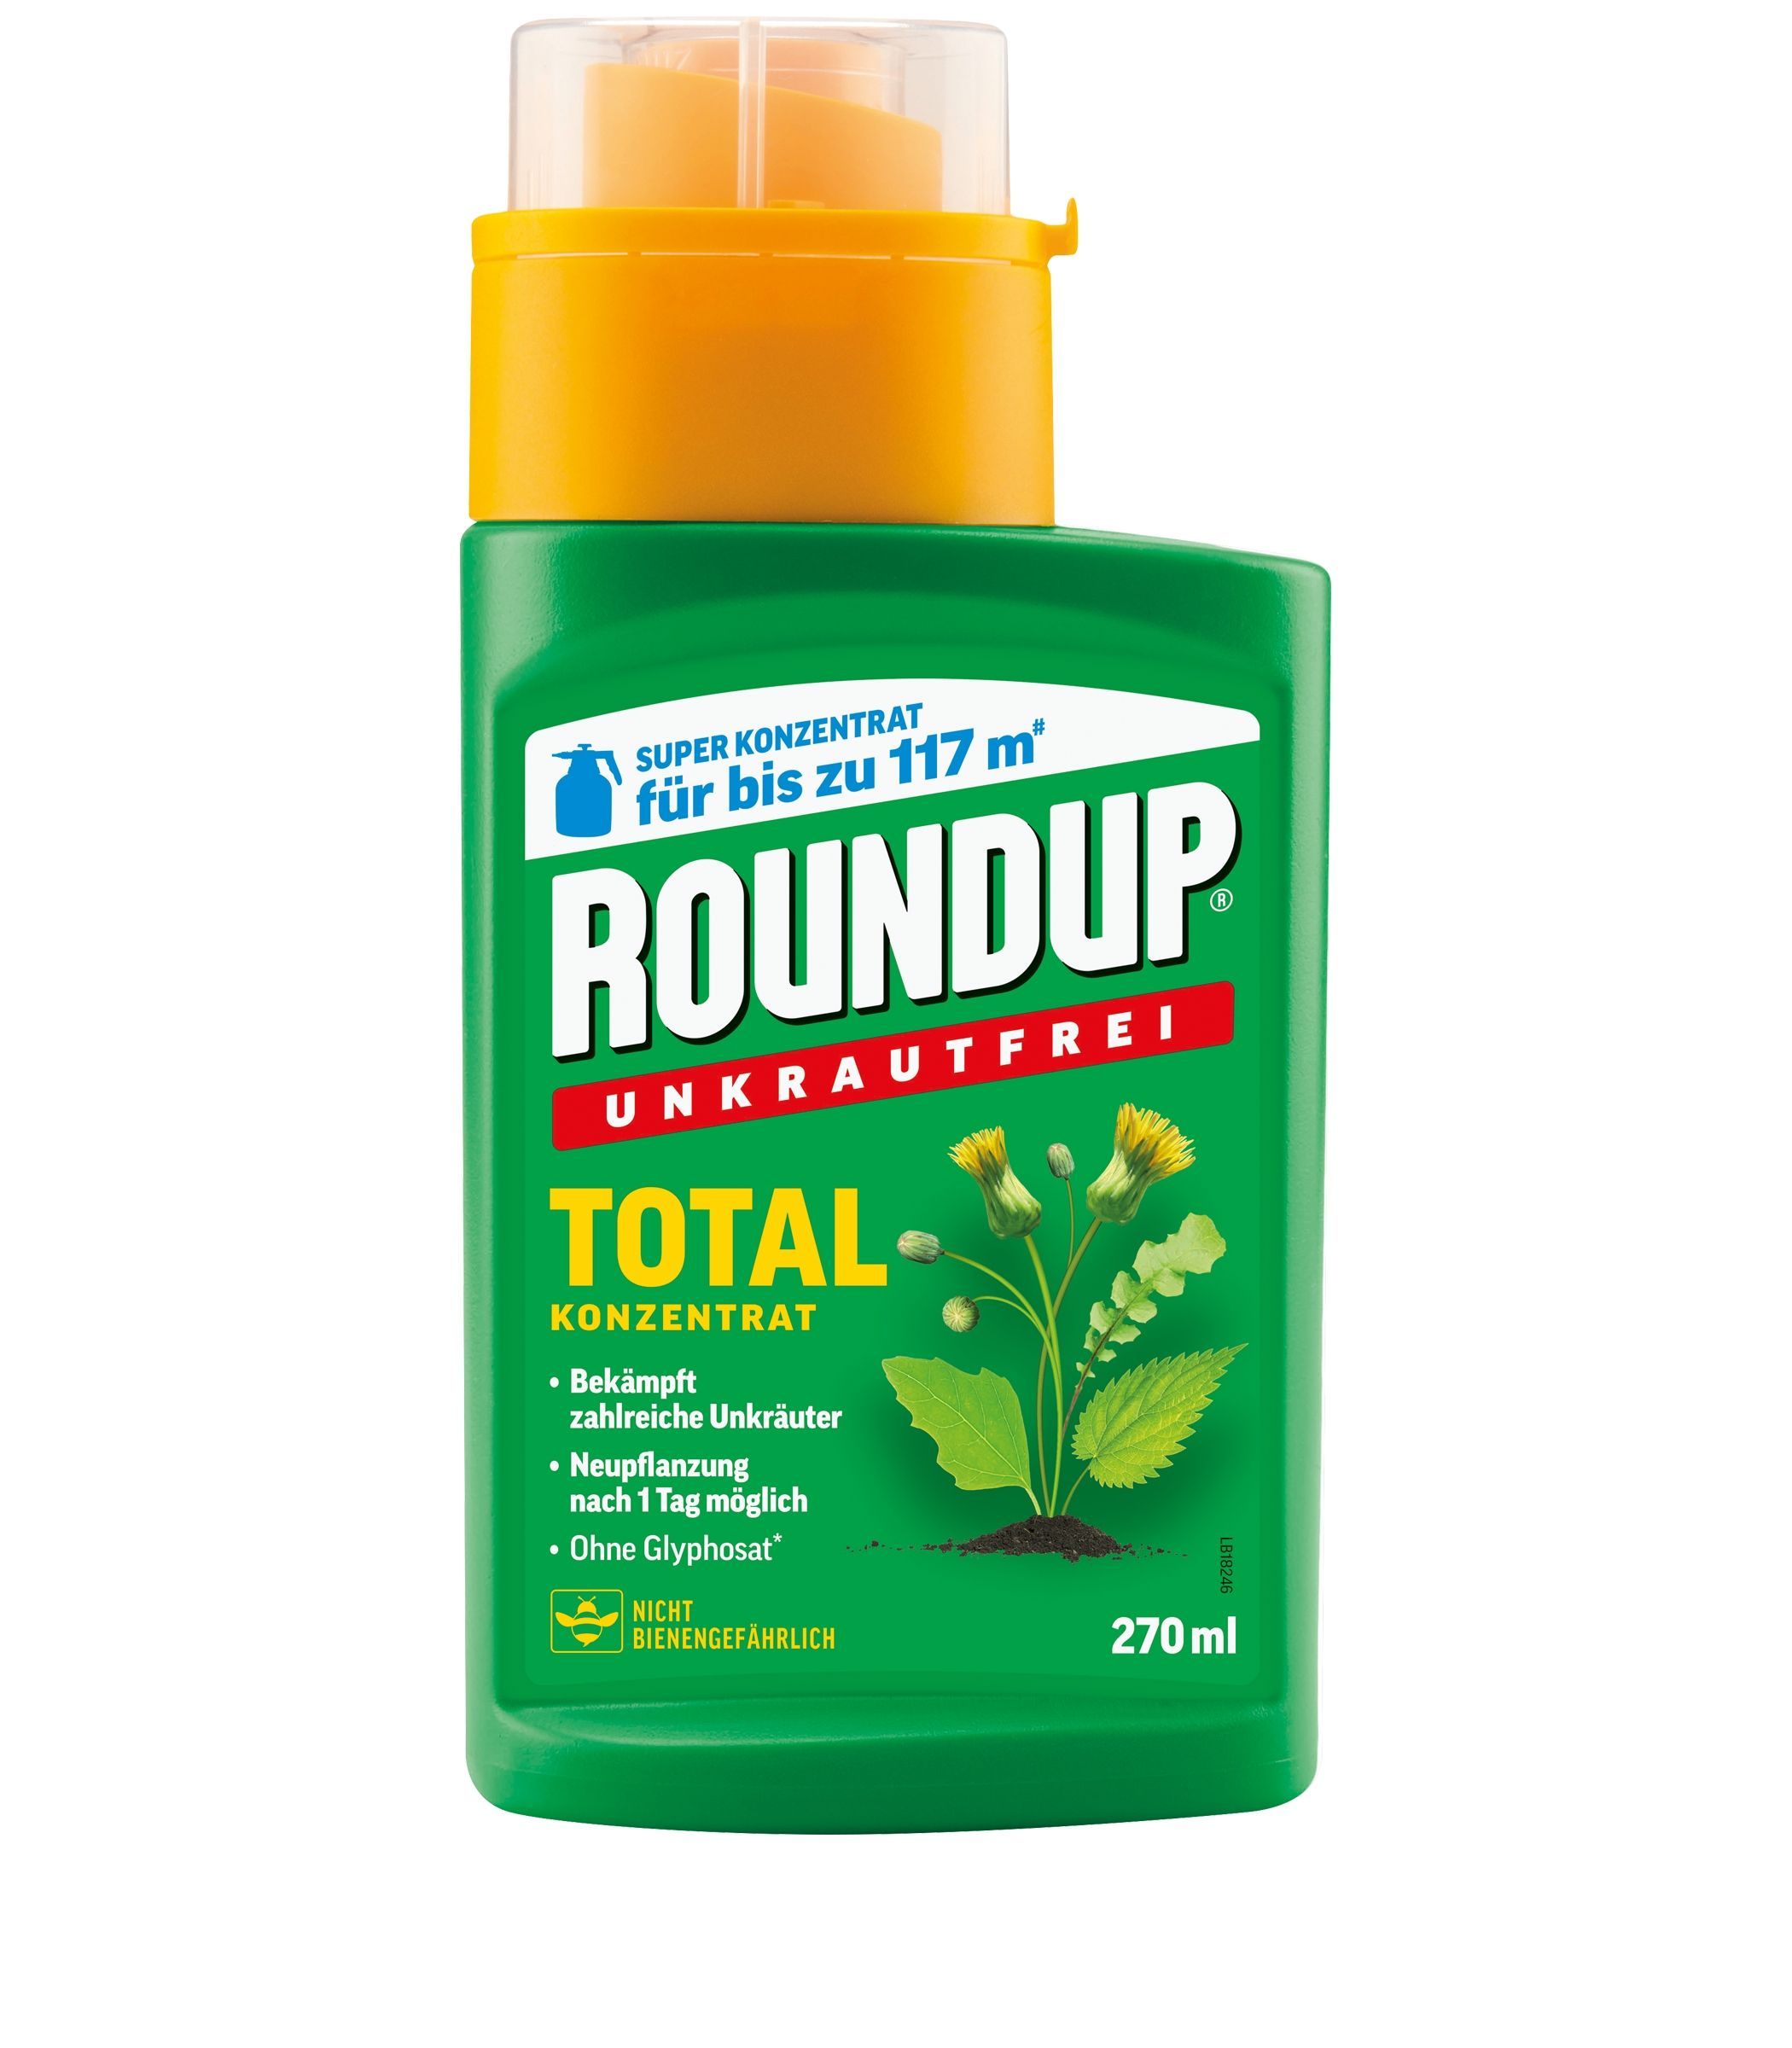 Roundup® Unkrautfrei Total Konzentrat 270 ml für bis zu 117 m² Neu 